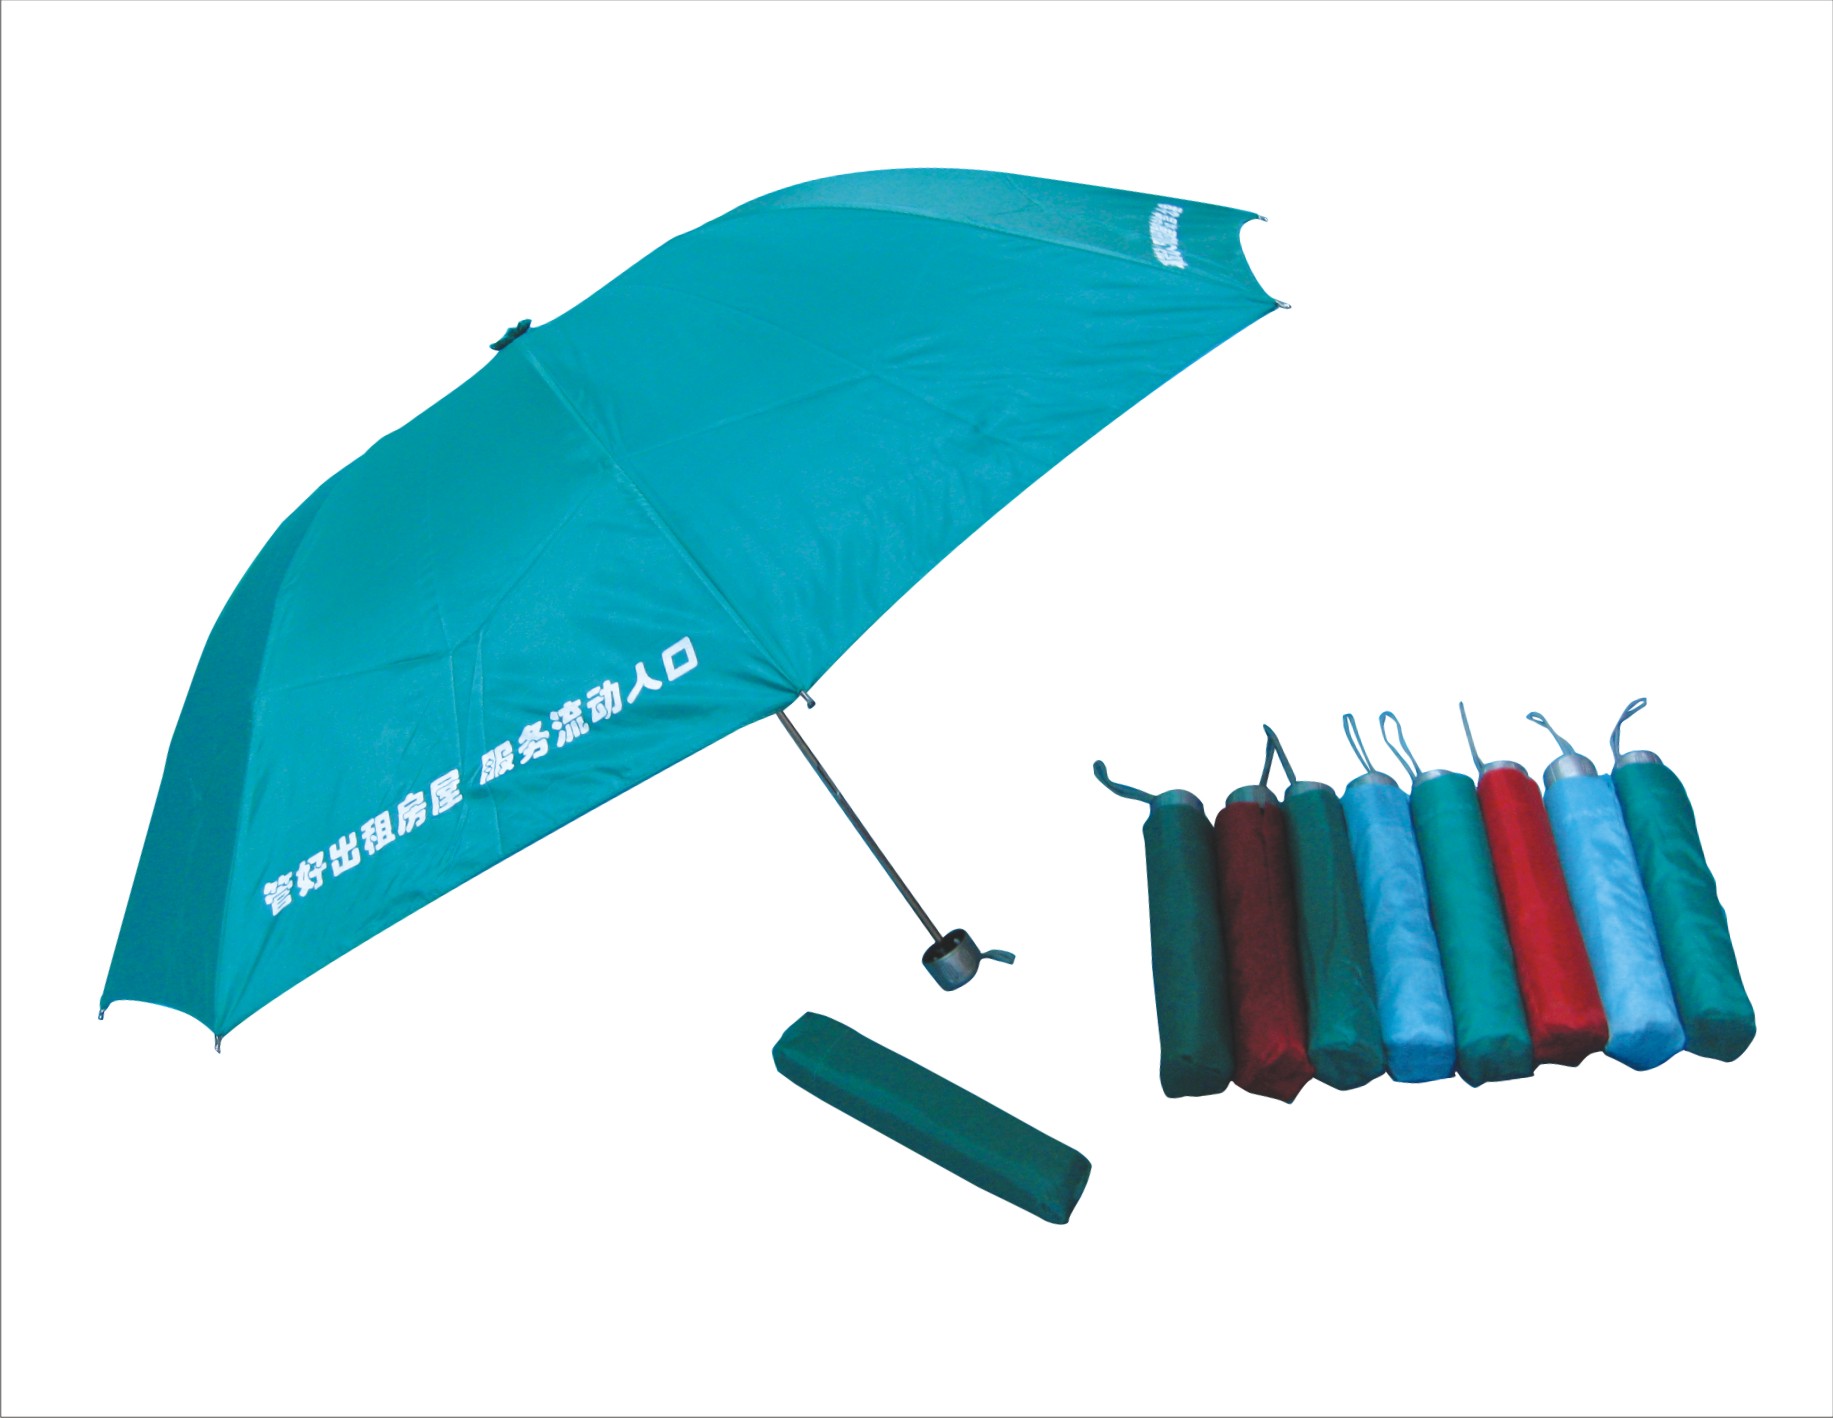 石家庄哪里有供应{zh0}的广告雨伞|广告雨伞定做、定制价格石家庄哪便宜